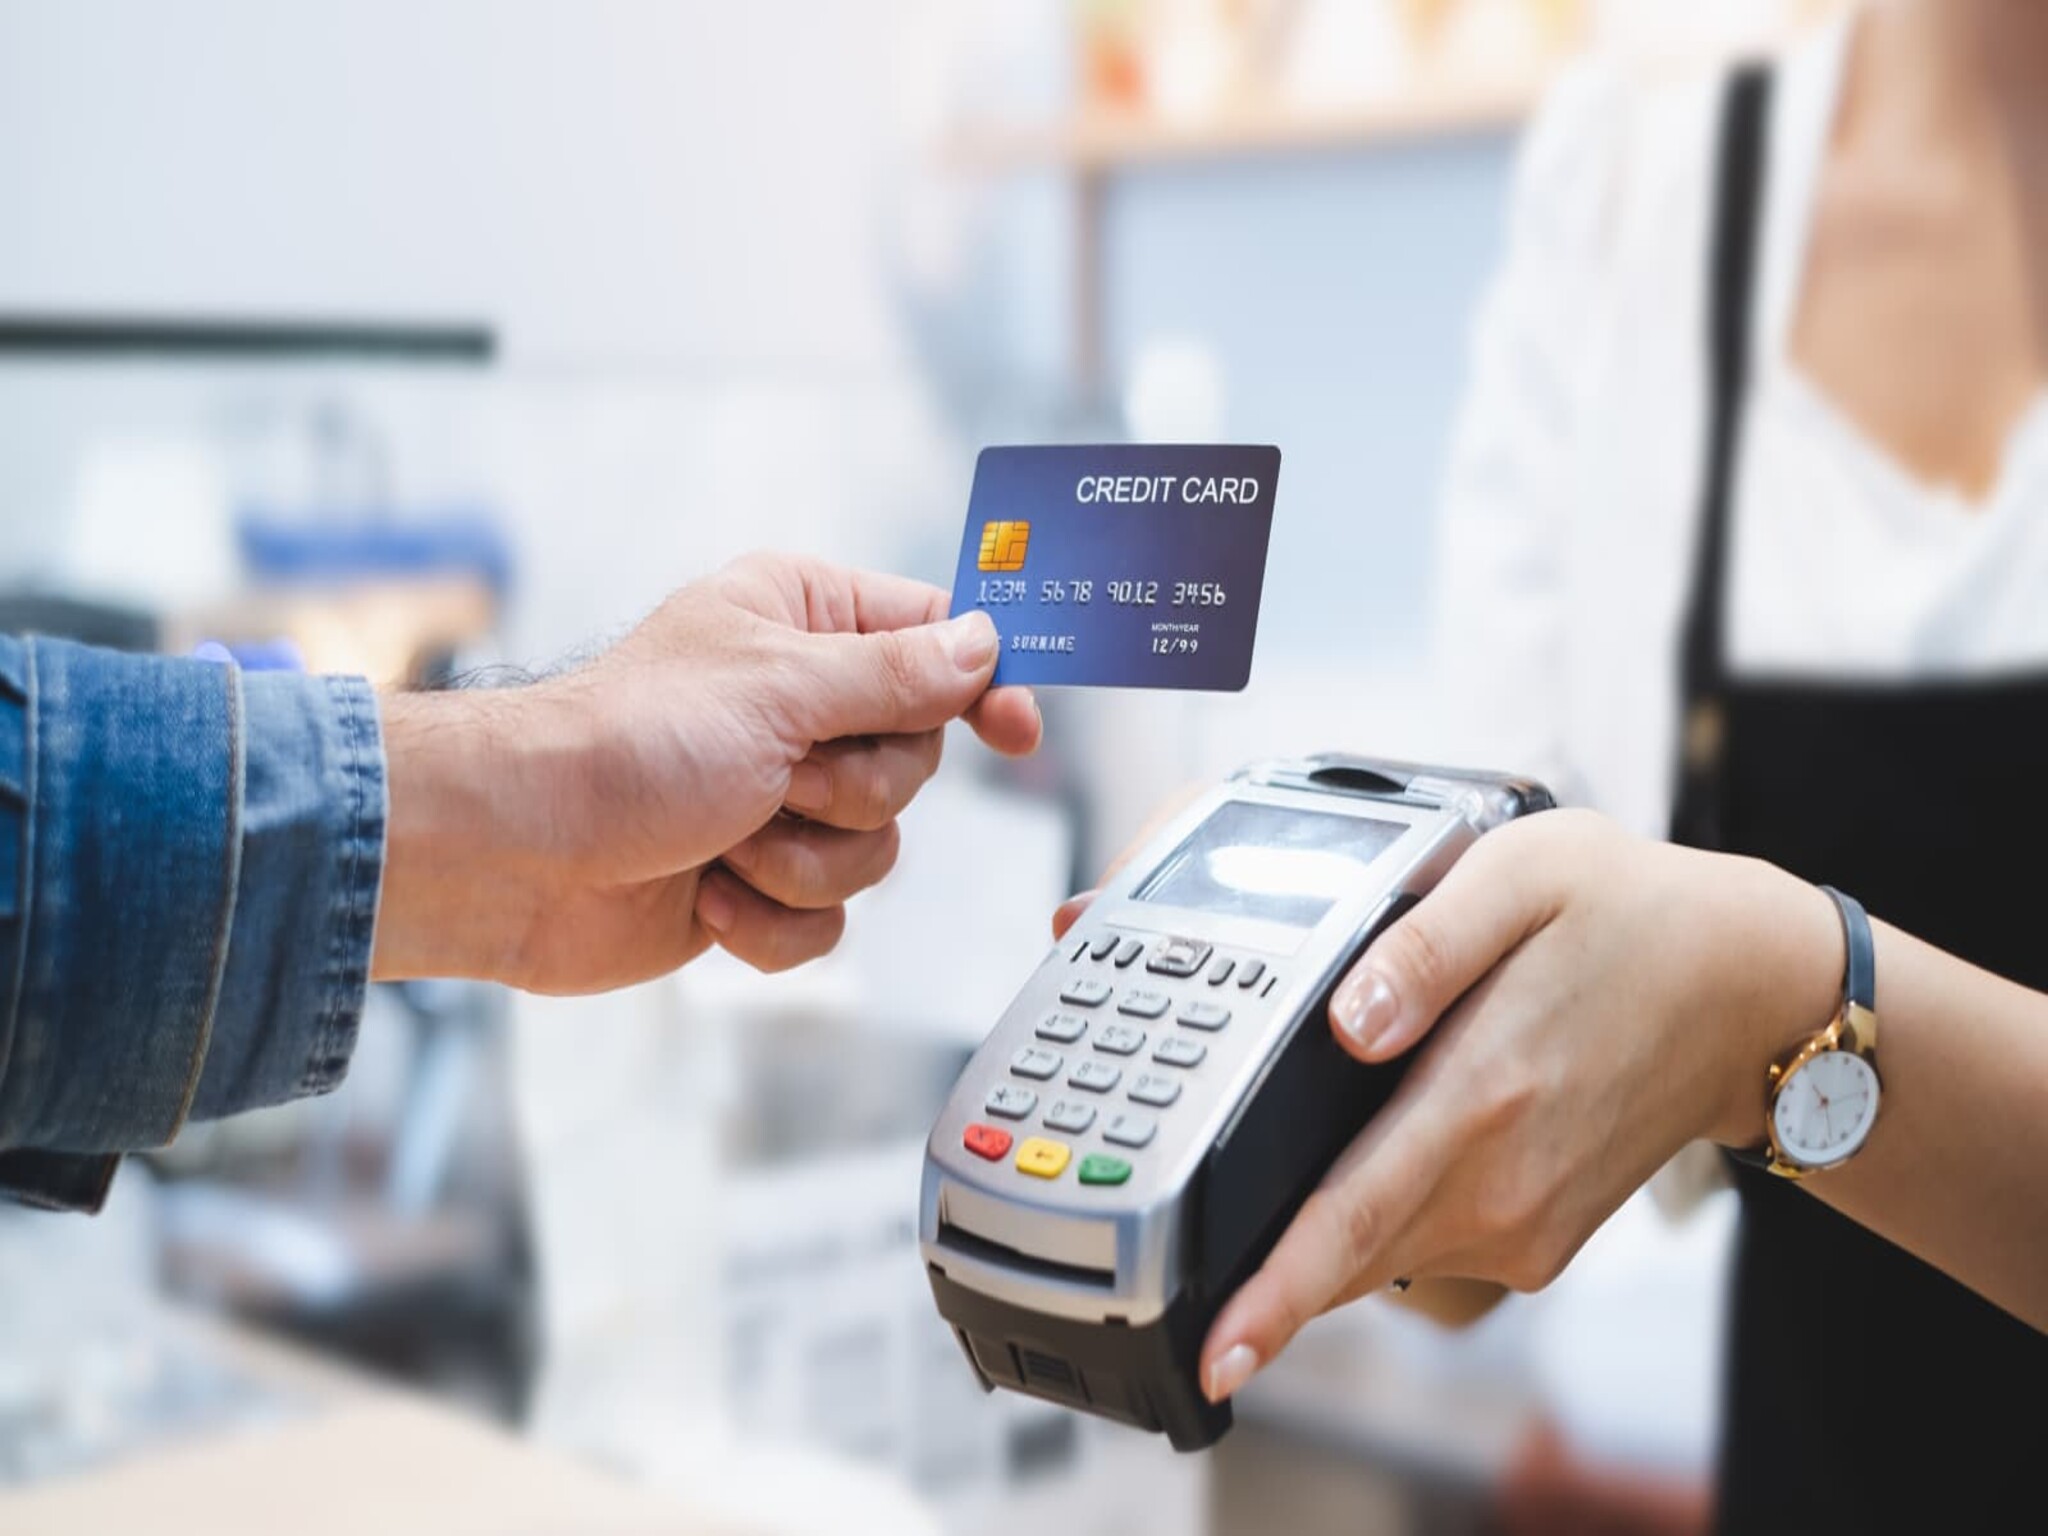 الإمارات تلغي بطاقات الدفع قريبا وتستبدلها بنظام أكثر تطورا